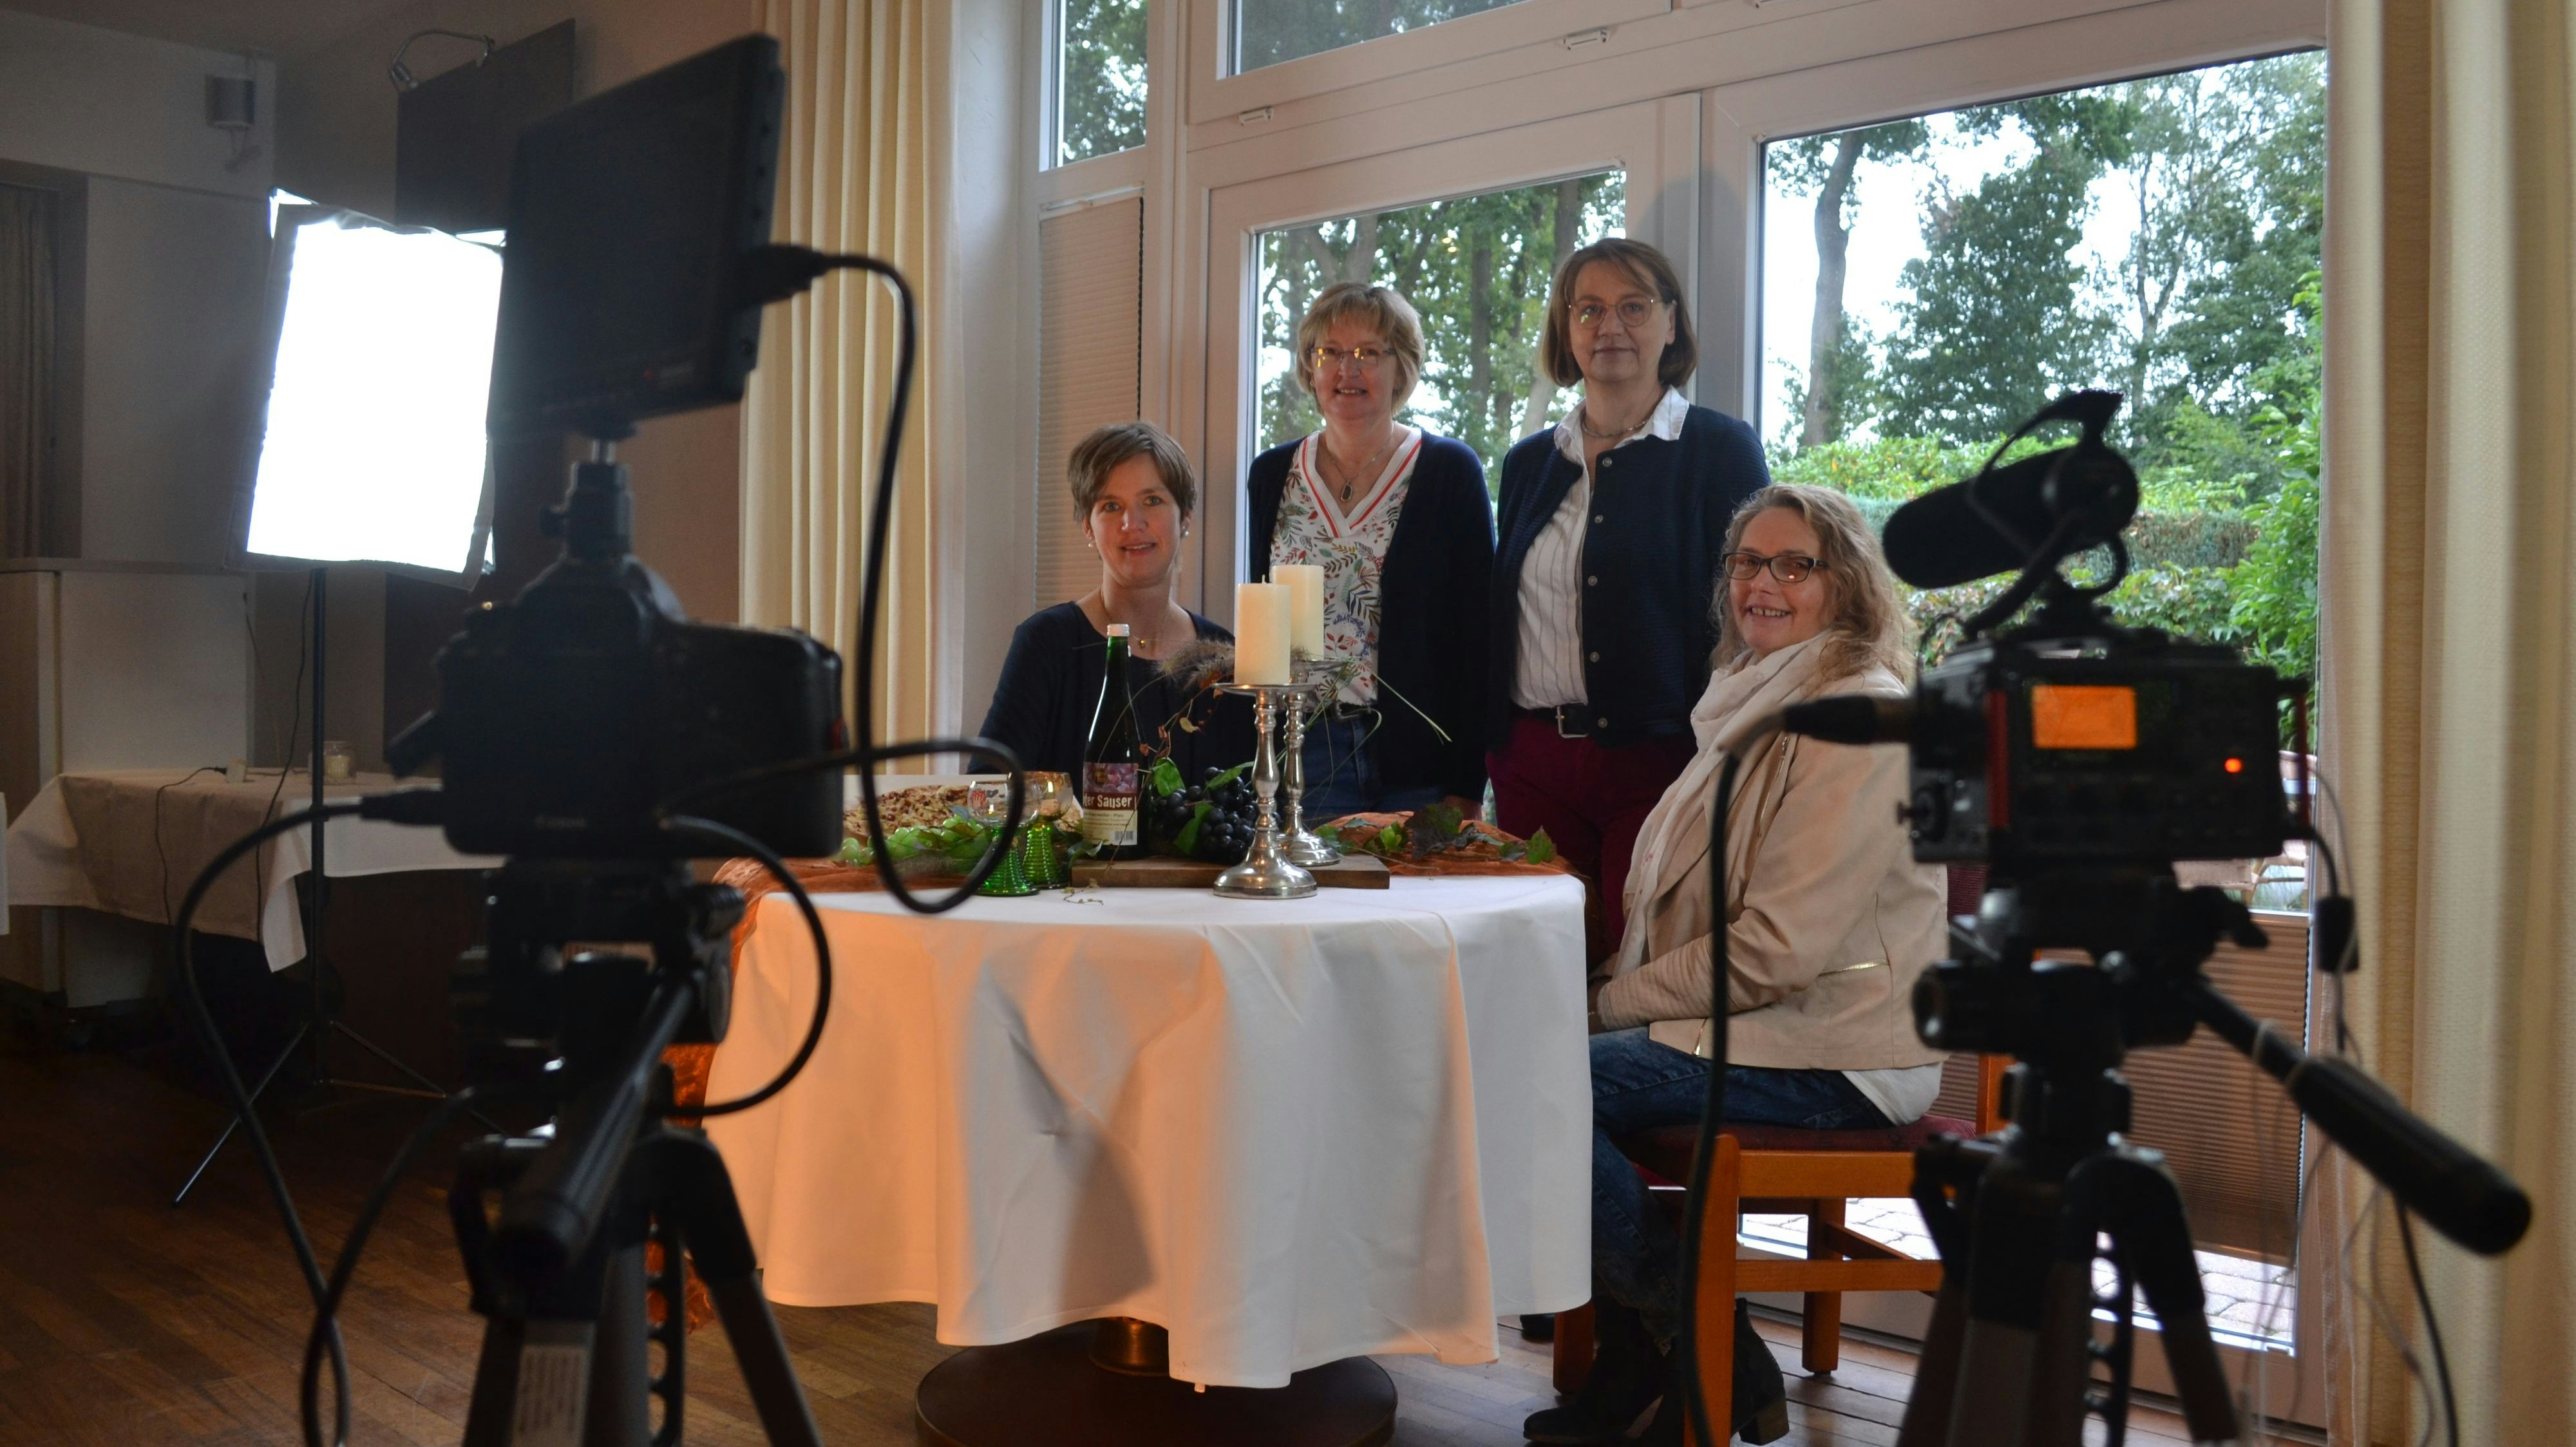 Vor der Kamera: Martina Burhorst (von links), Edeltraud Osterloh, Veronika Evers und Monika Peek wollen mit einem Video für ihre gemeinsame Aktion werben. Foto: Schrimper